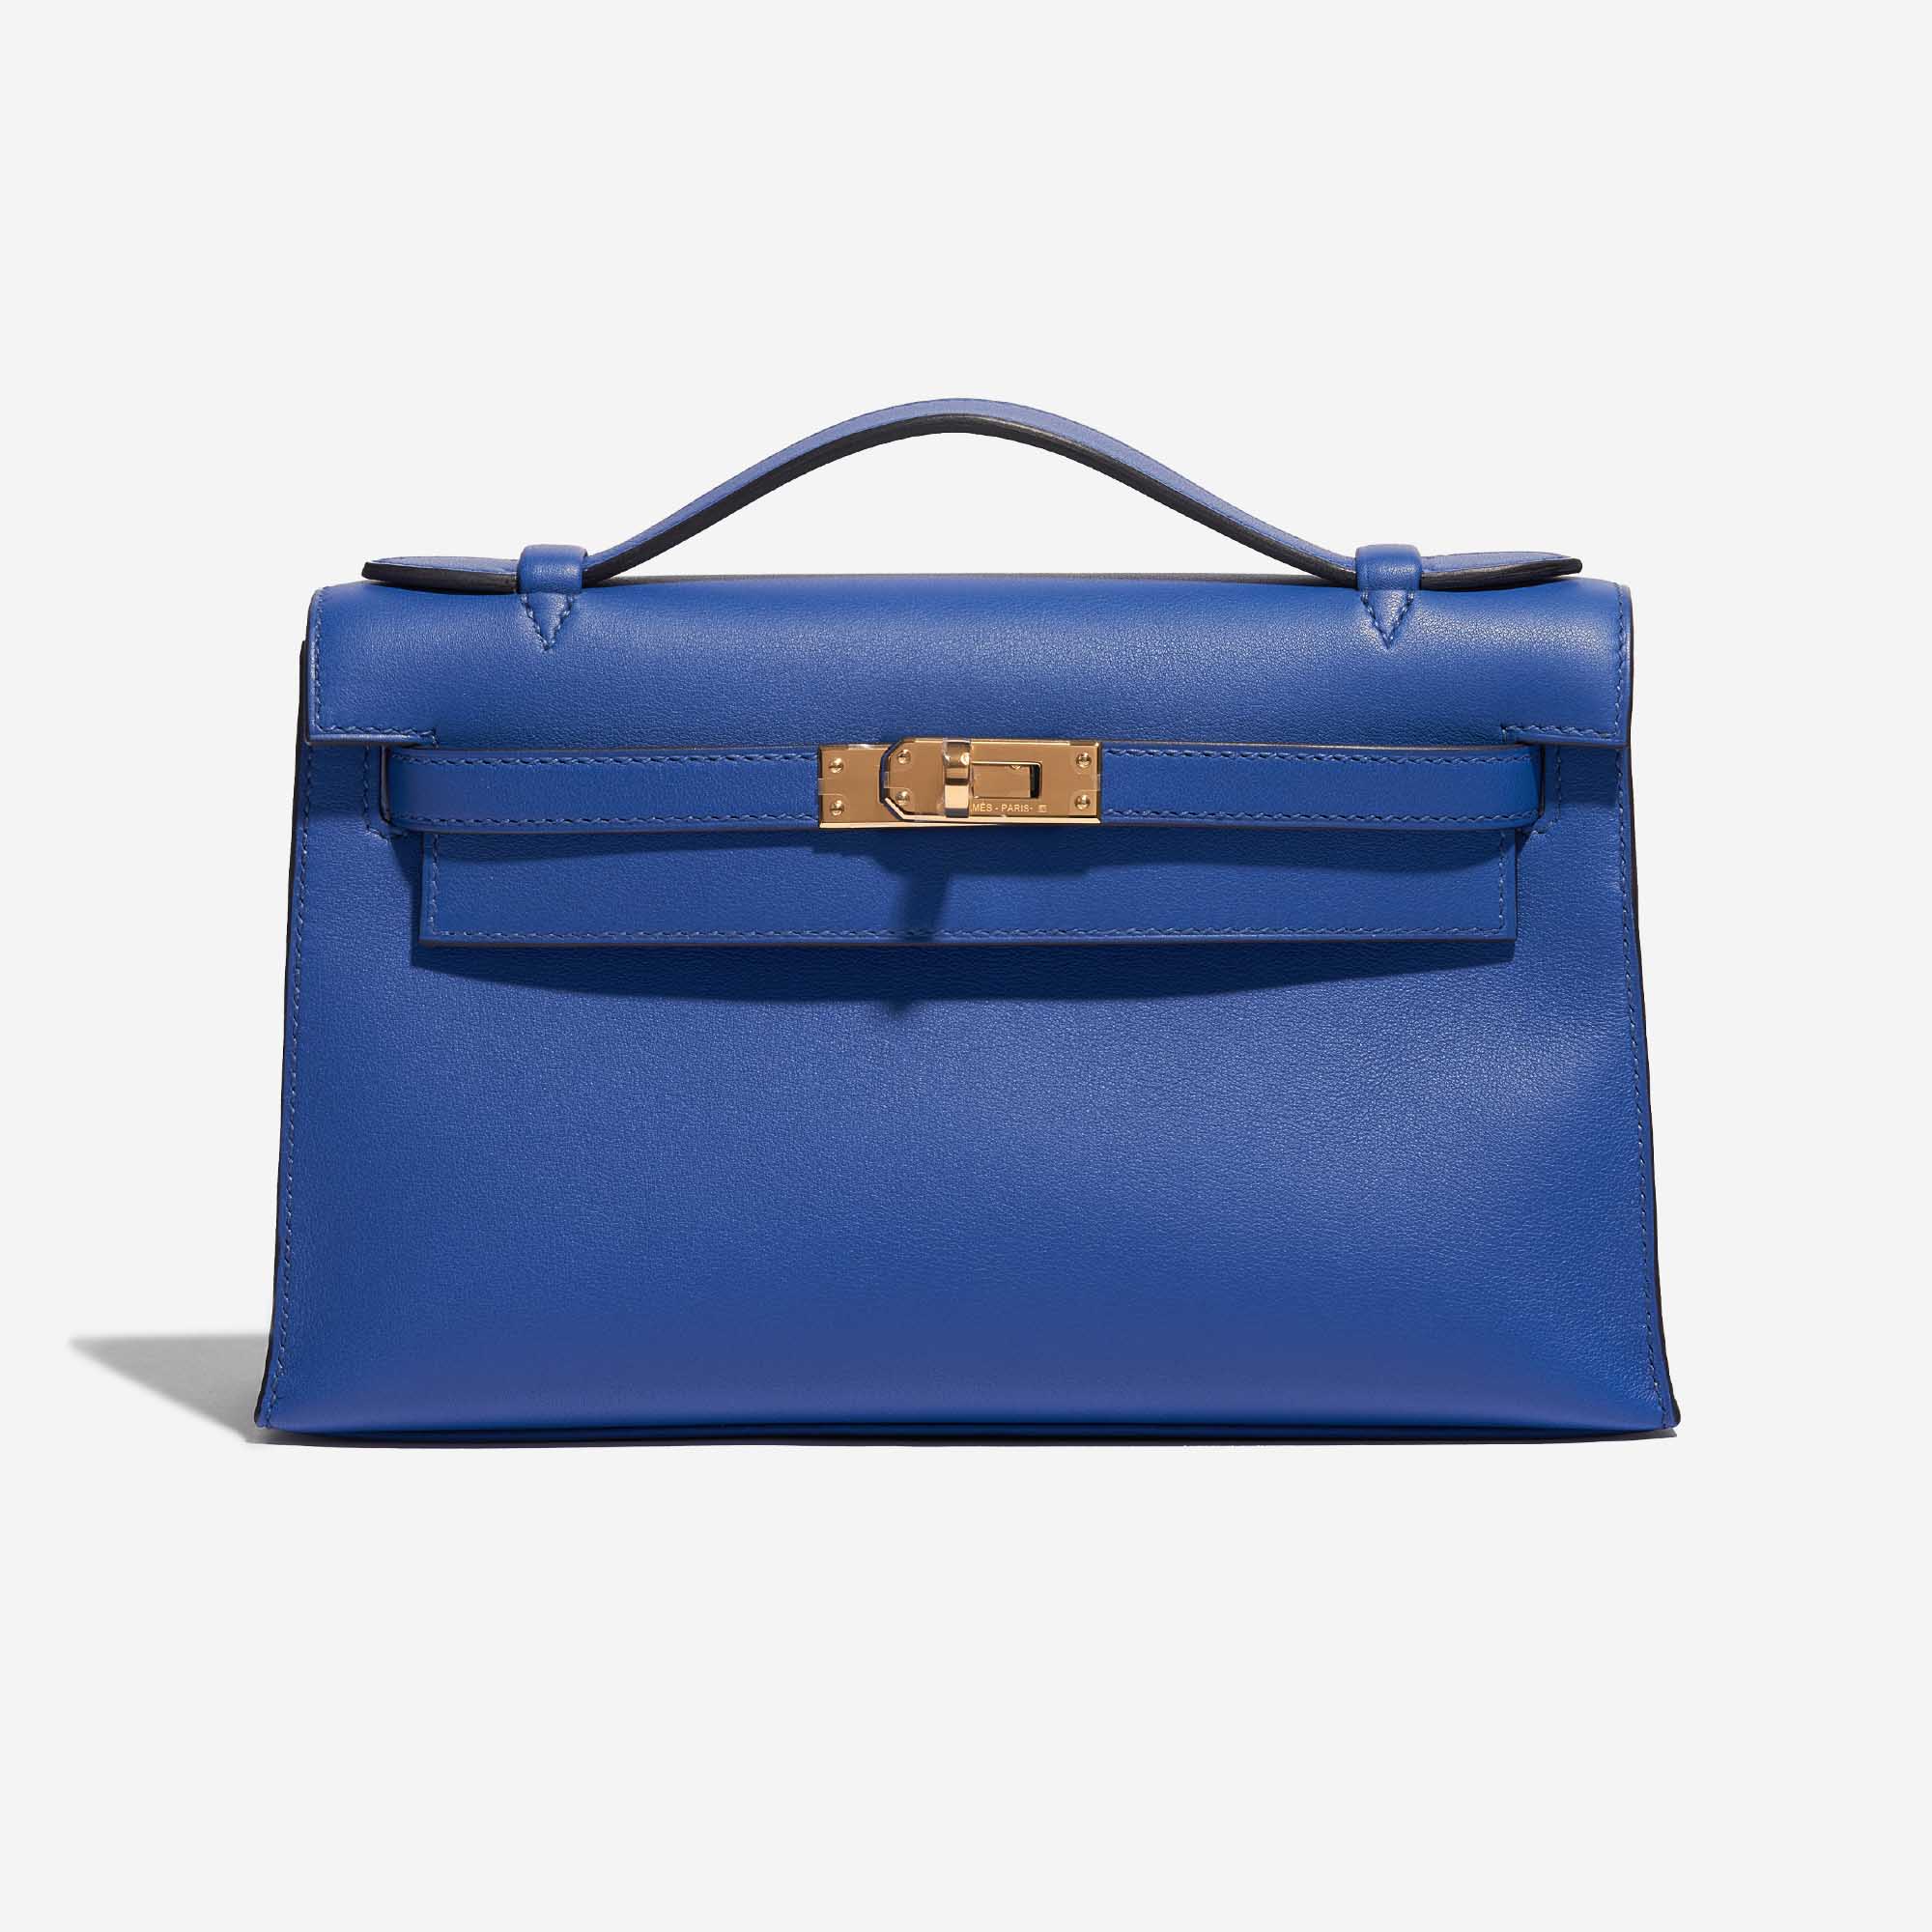 Sac Hermès d'occasion Kelly Pochette Swift Bleu de France Bleu Front | Vendez votre sac de créateur sur Saclab.com